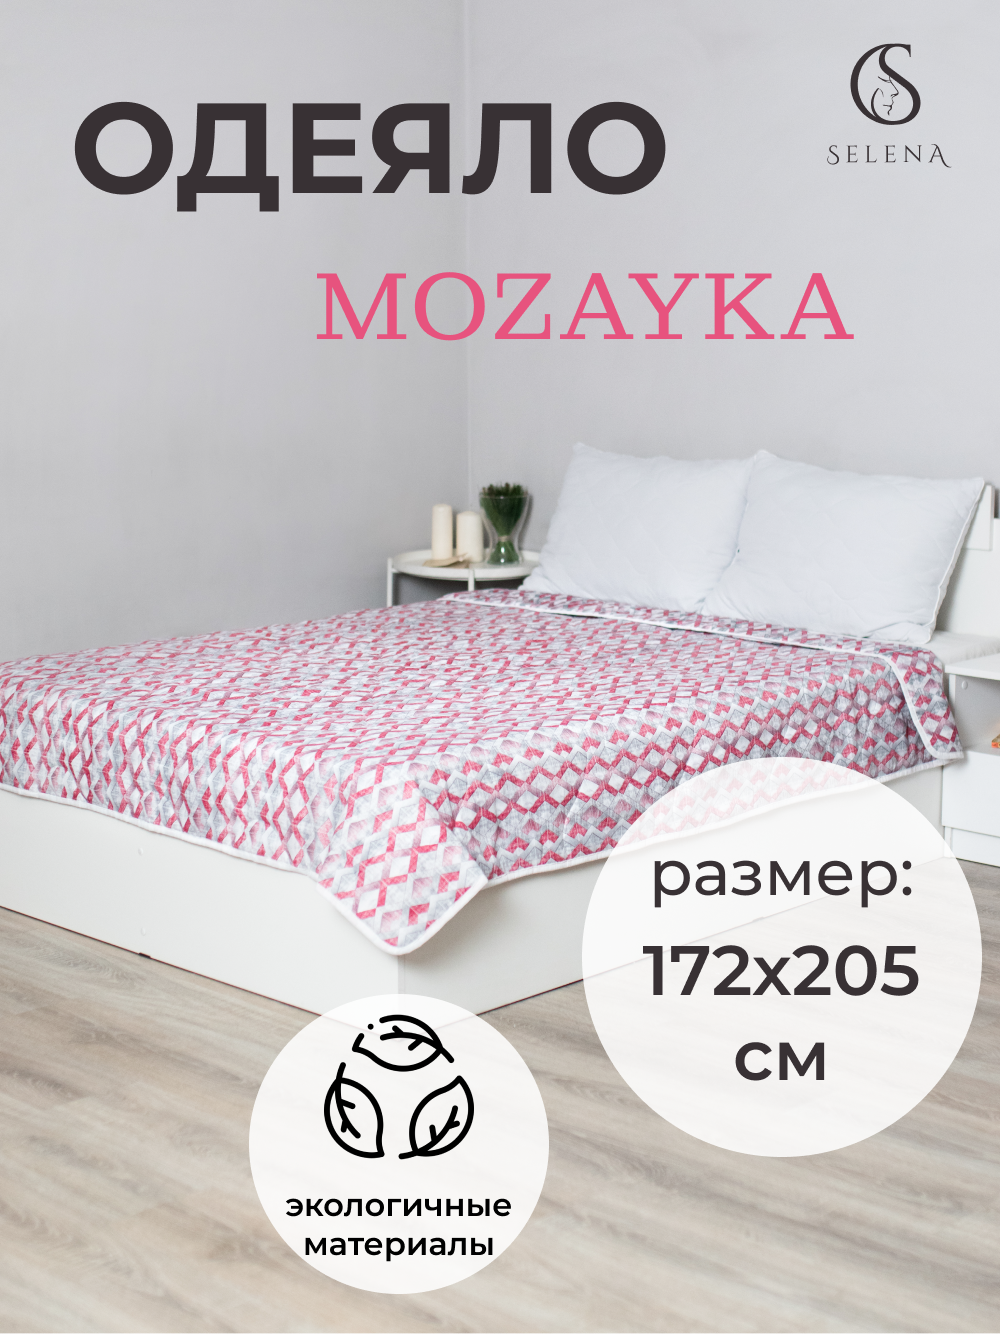 Одеяло SELENA Mozayka облегченное, 172 х 205 см, серый в клетку